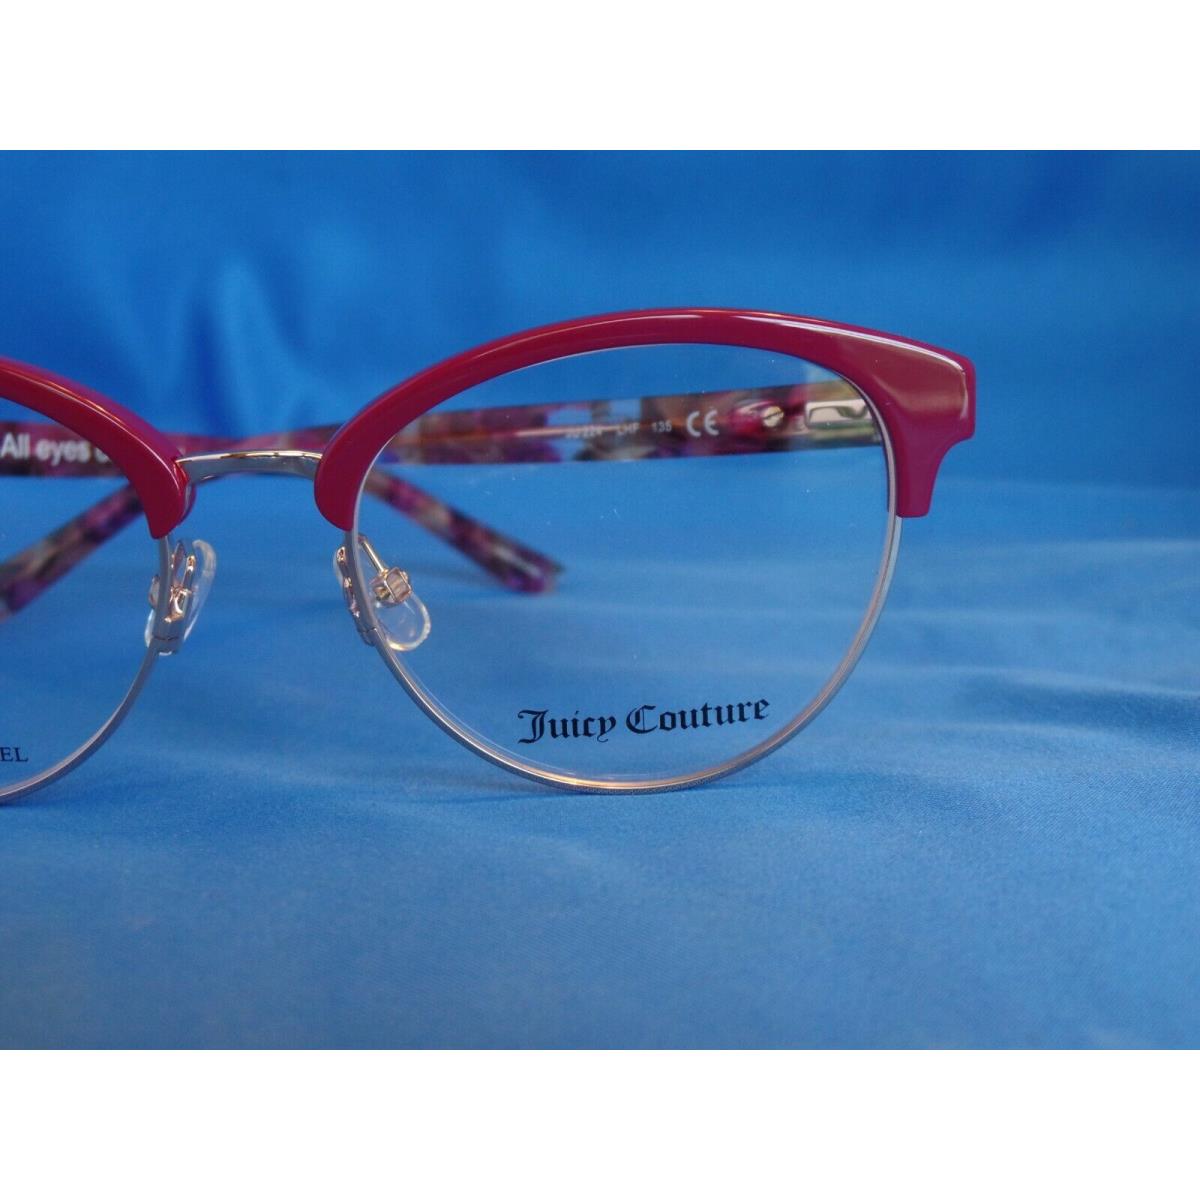 Juicy Couture eyeglasses  - Burgundy Opal , Burgundy Opal Frame 1